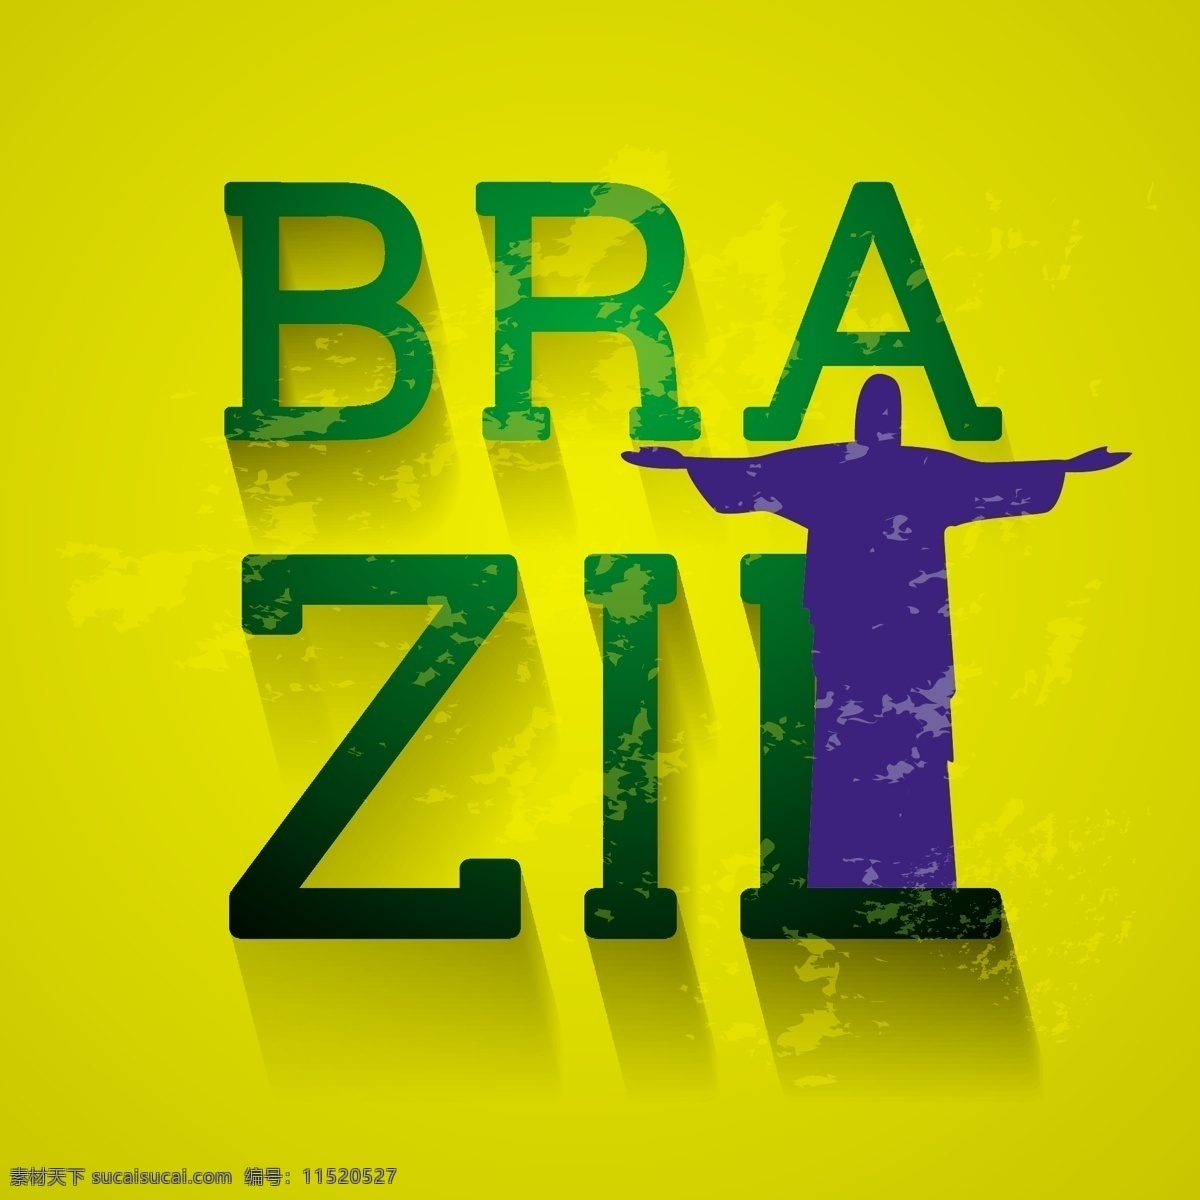 巴西 世界杯 神父 海报 模板下载 足球 黄色 背景 体育运动 生活百科 矢量素材